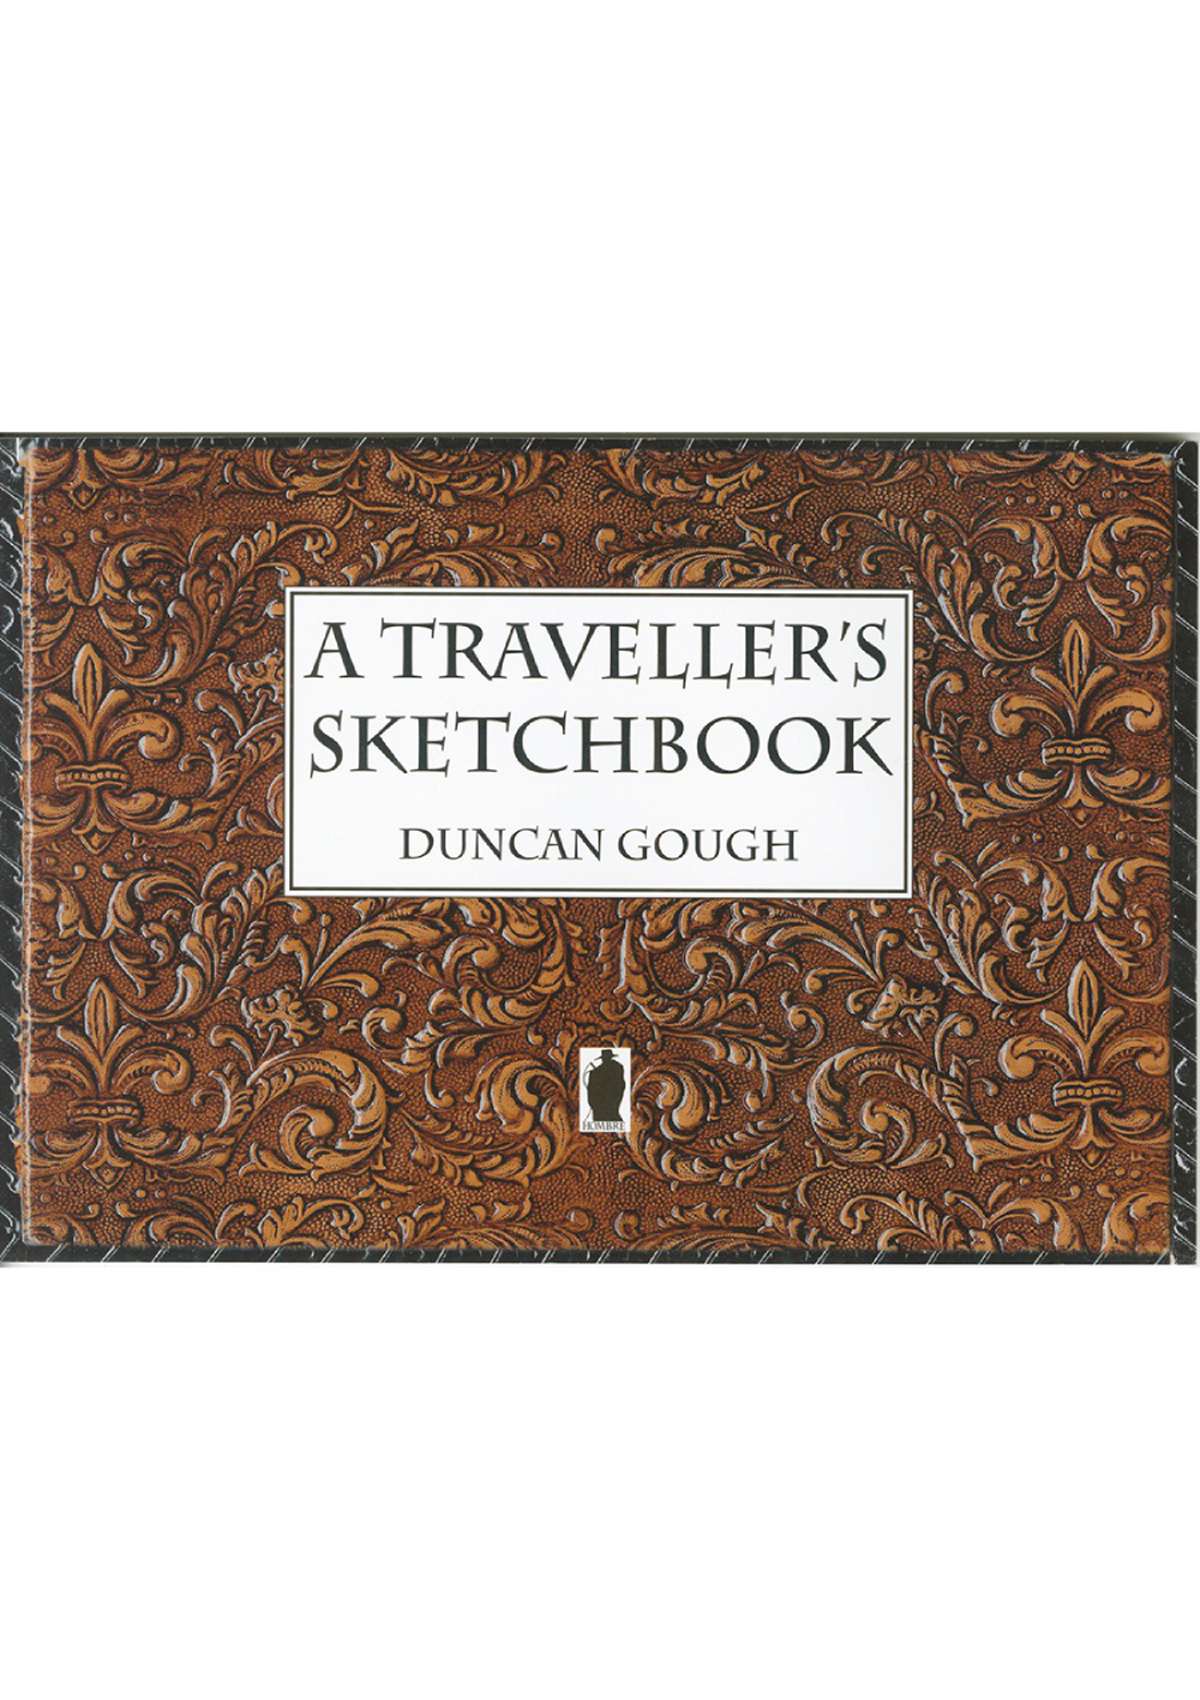 5421 - A Traveller's Sketchbook